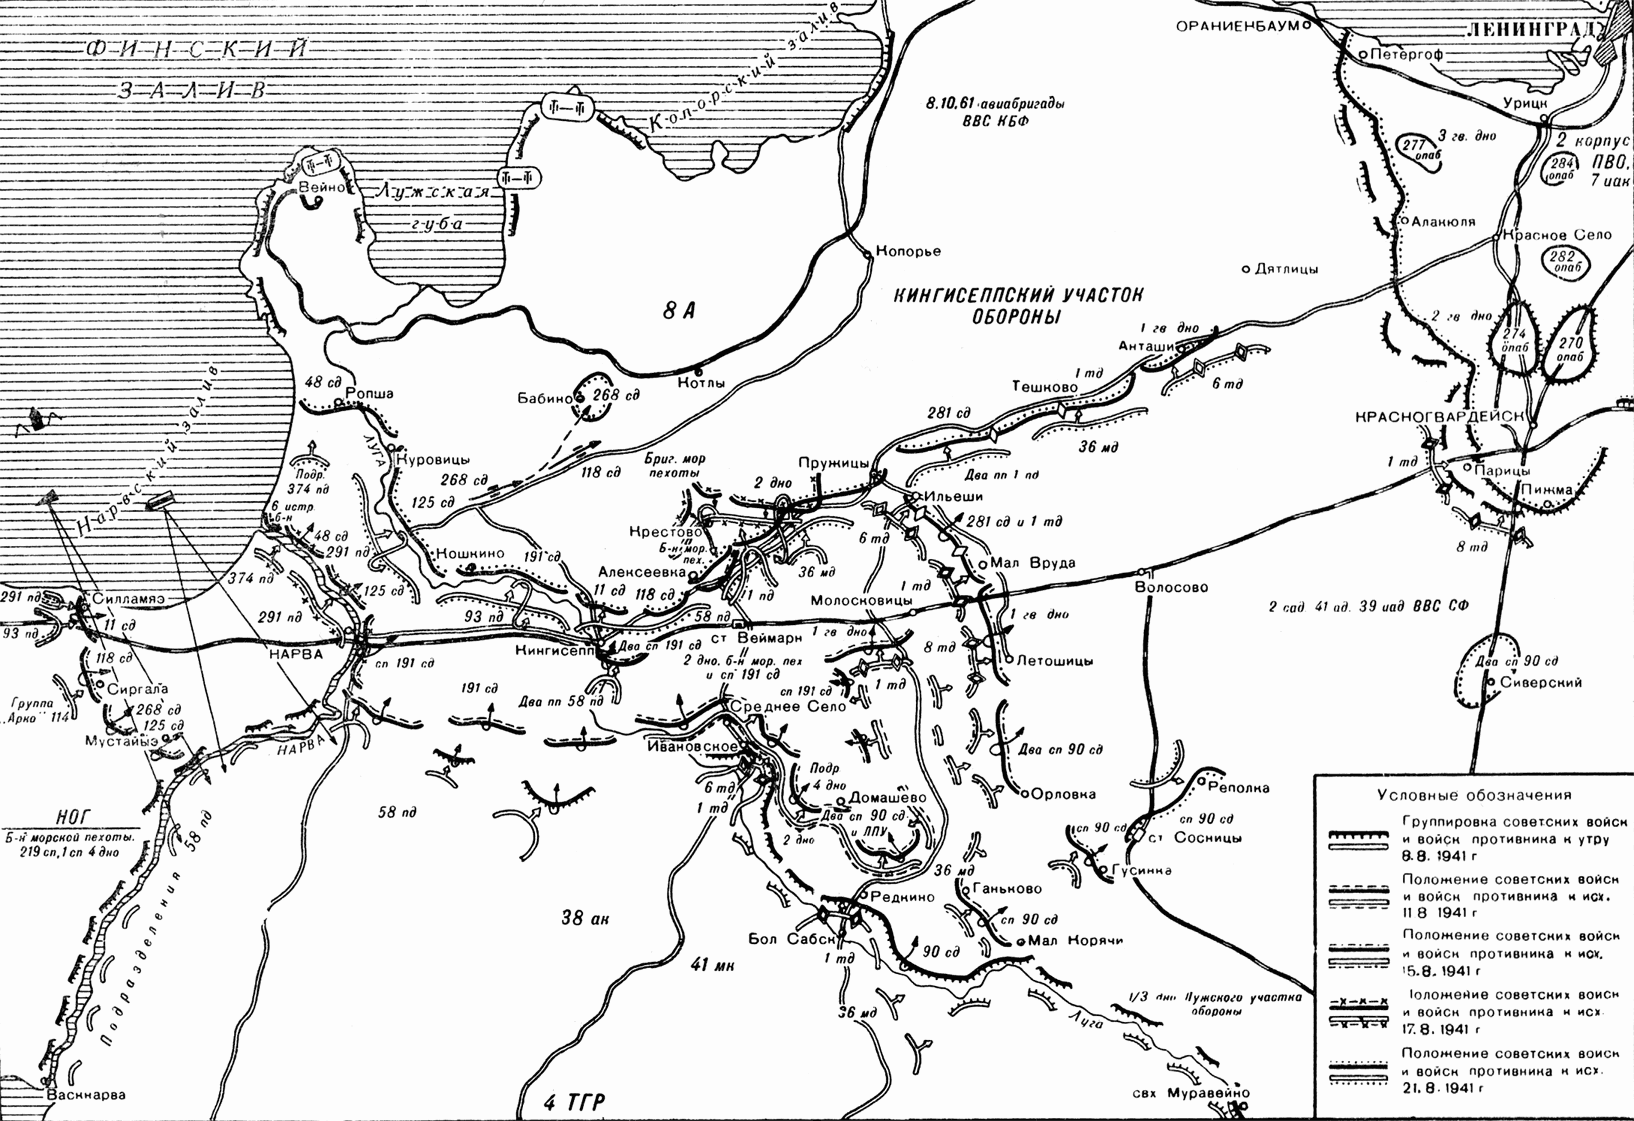 Лужский оборонительный рубеж 1941 карта. Кингисеппско-Лужская оборонительная операция. Лужский котел 1941 карты. Лужский рубеж на карте июль-август 1941. Город с которым связана оборонительное сражение